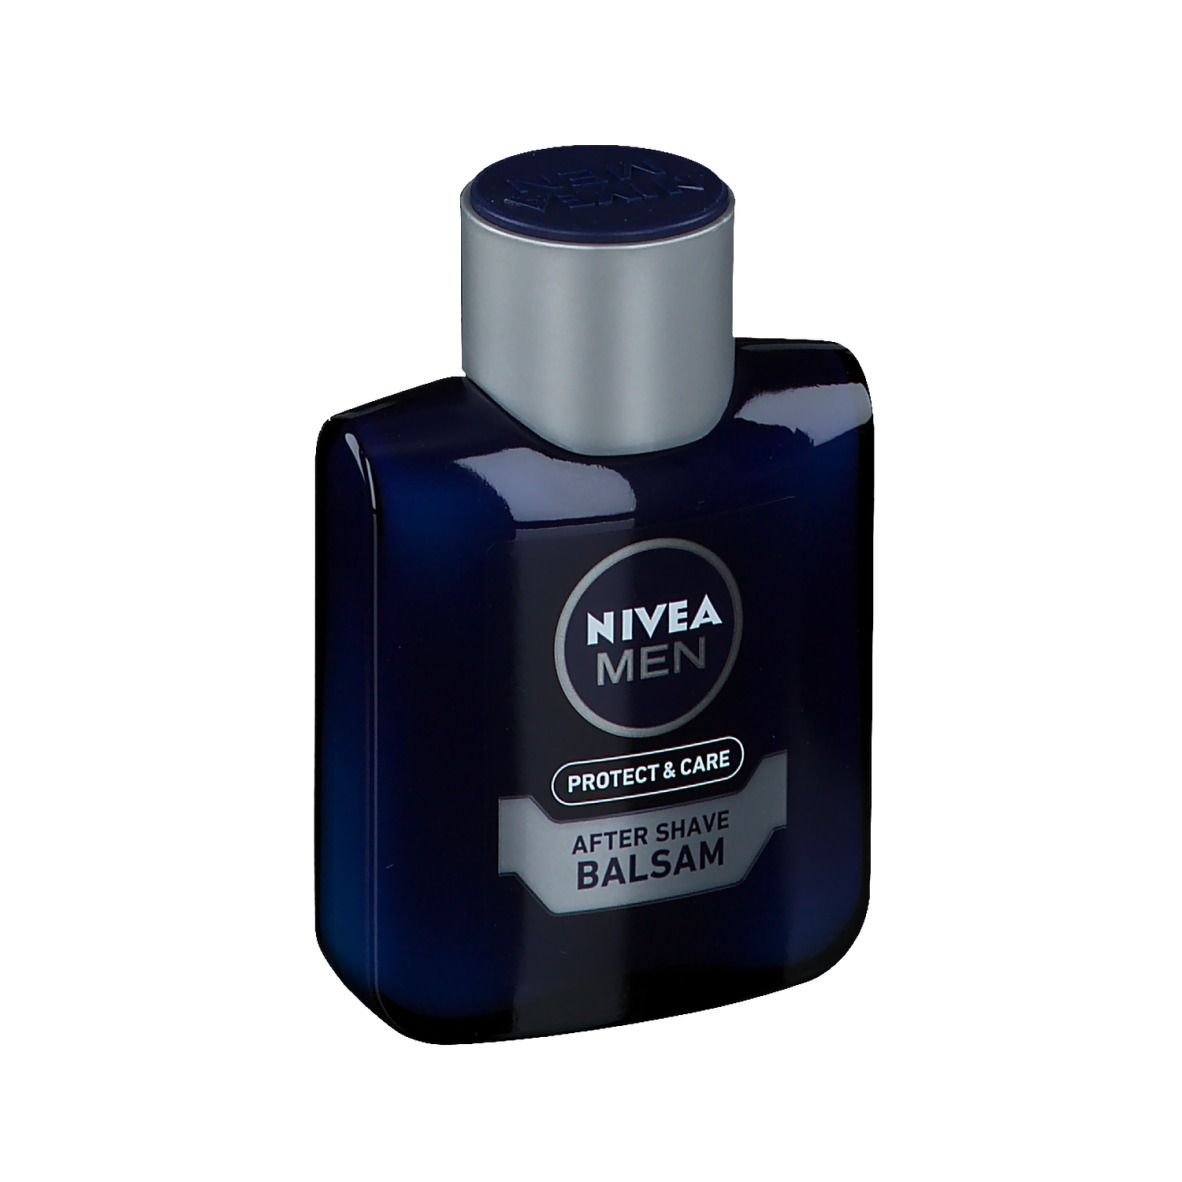 NIVEA® MEN Protect & Care After Shave Balsam